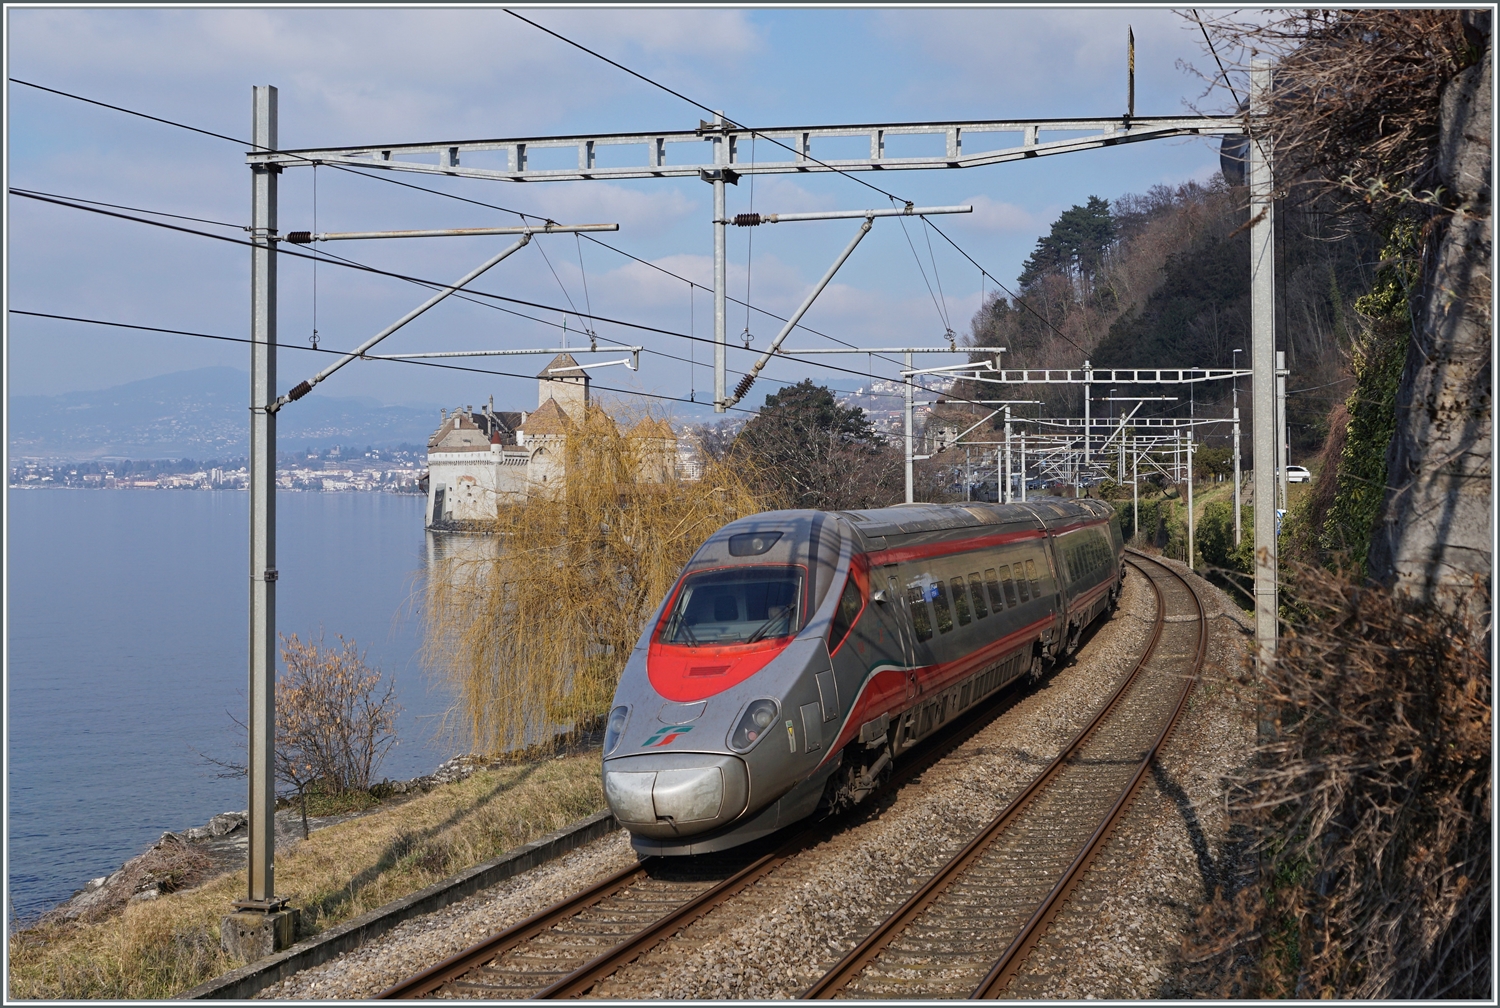 Der FS Trenitalia ETR 610 ist als EC von Milano nach Genève unterwegs und fährt am bekannten Château de Chillon vorbei. 

8. Februar 2023